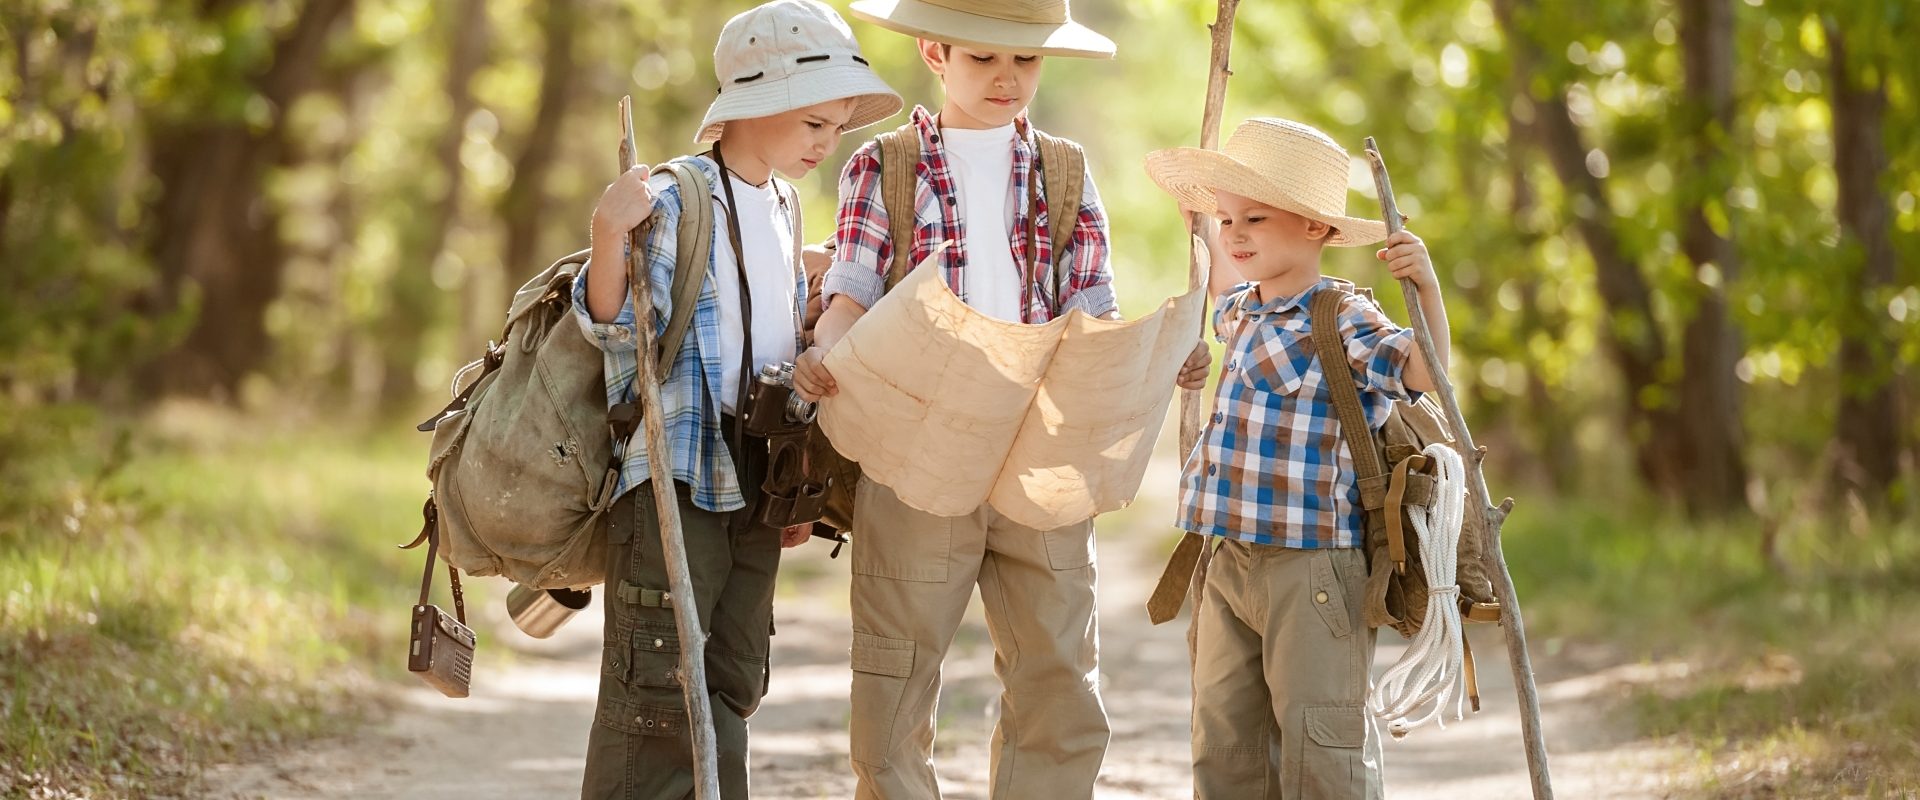 Jak nie zgubić się w lesie opowiada Adam Wajrak. Trzech małych chłopców ubranych jak podróżnicy patrzy na mapę i szuka drogi w lesie.